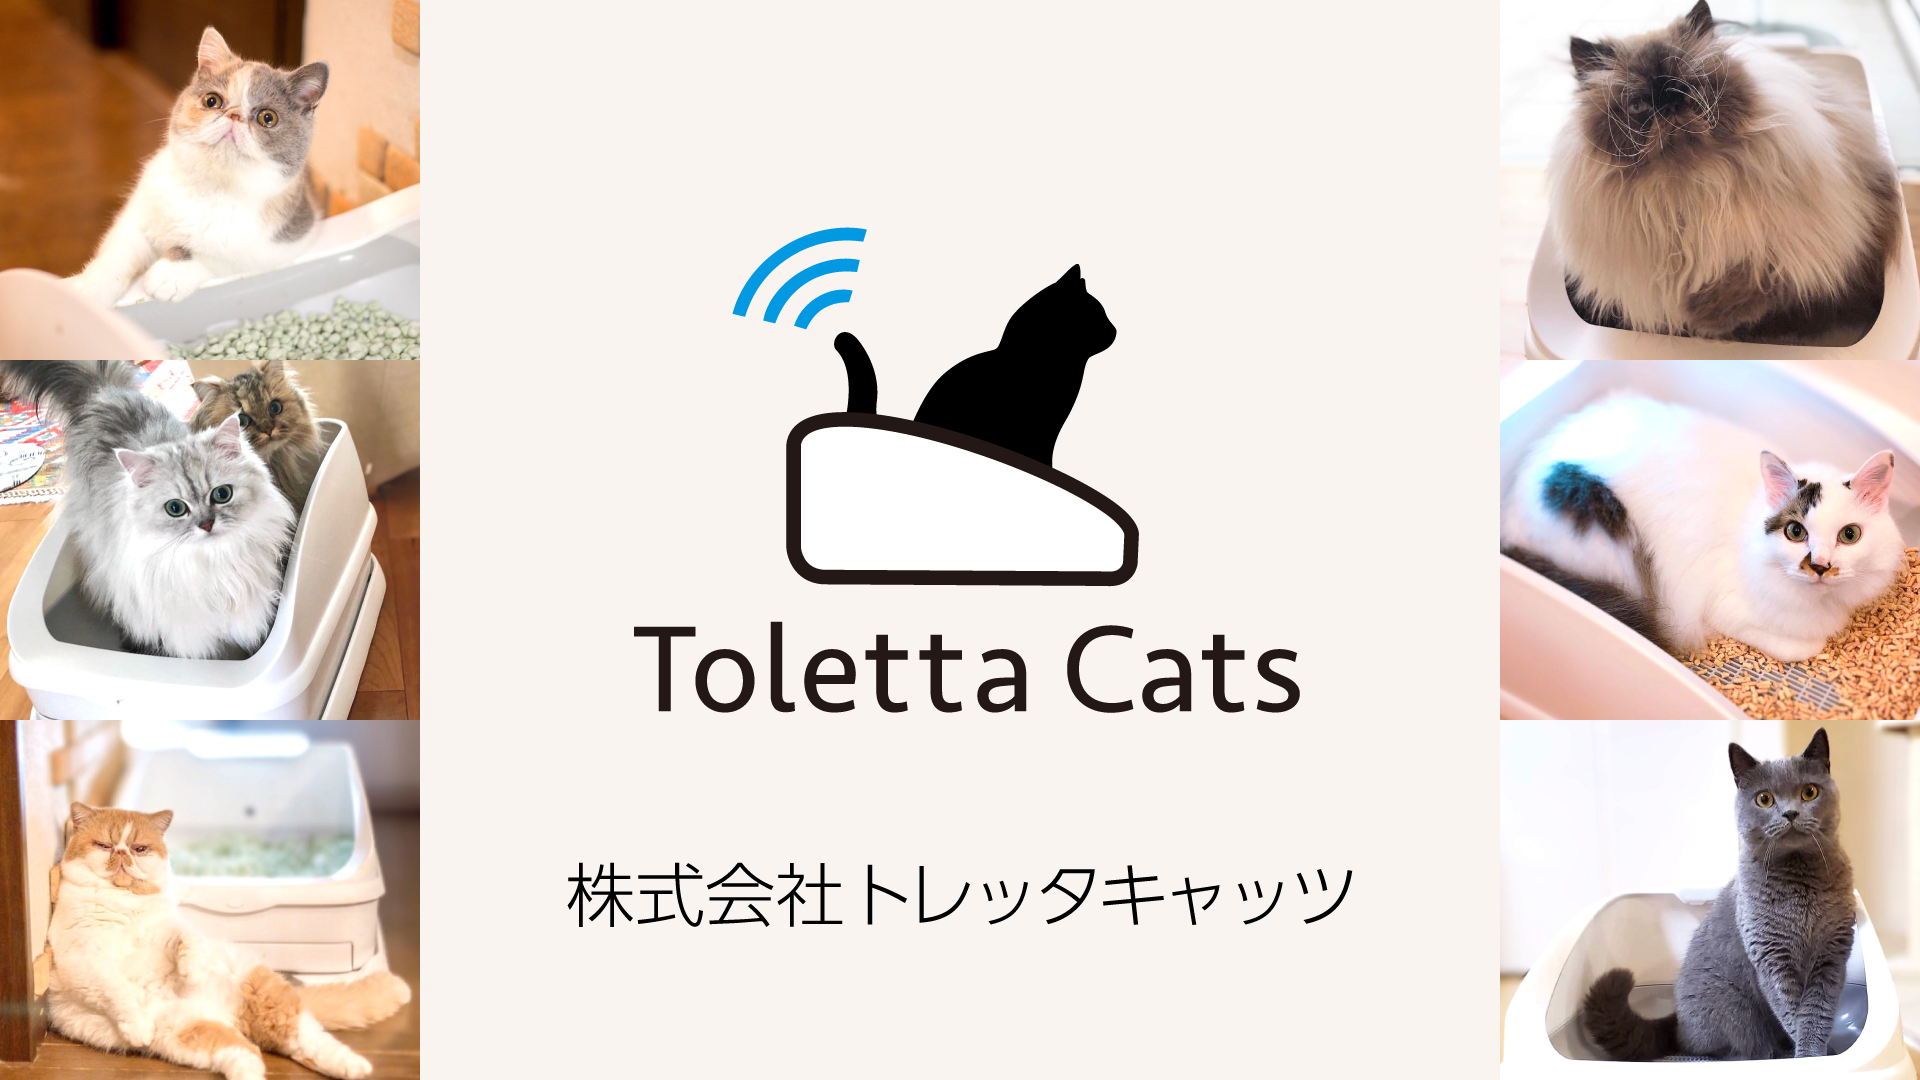 株式会社ハチたま 本日6月1日より 株式会社トレッタキャッツ Toletta Cats Inc へ社名変更 誕生記念snsキャンペーン開催 トレッタキャッツのプレスリリース